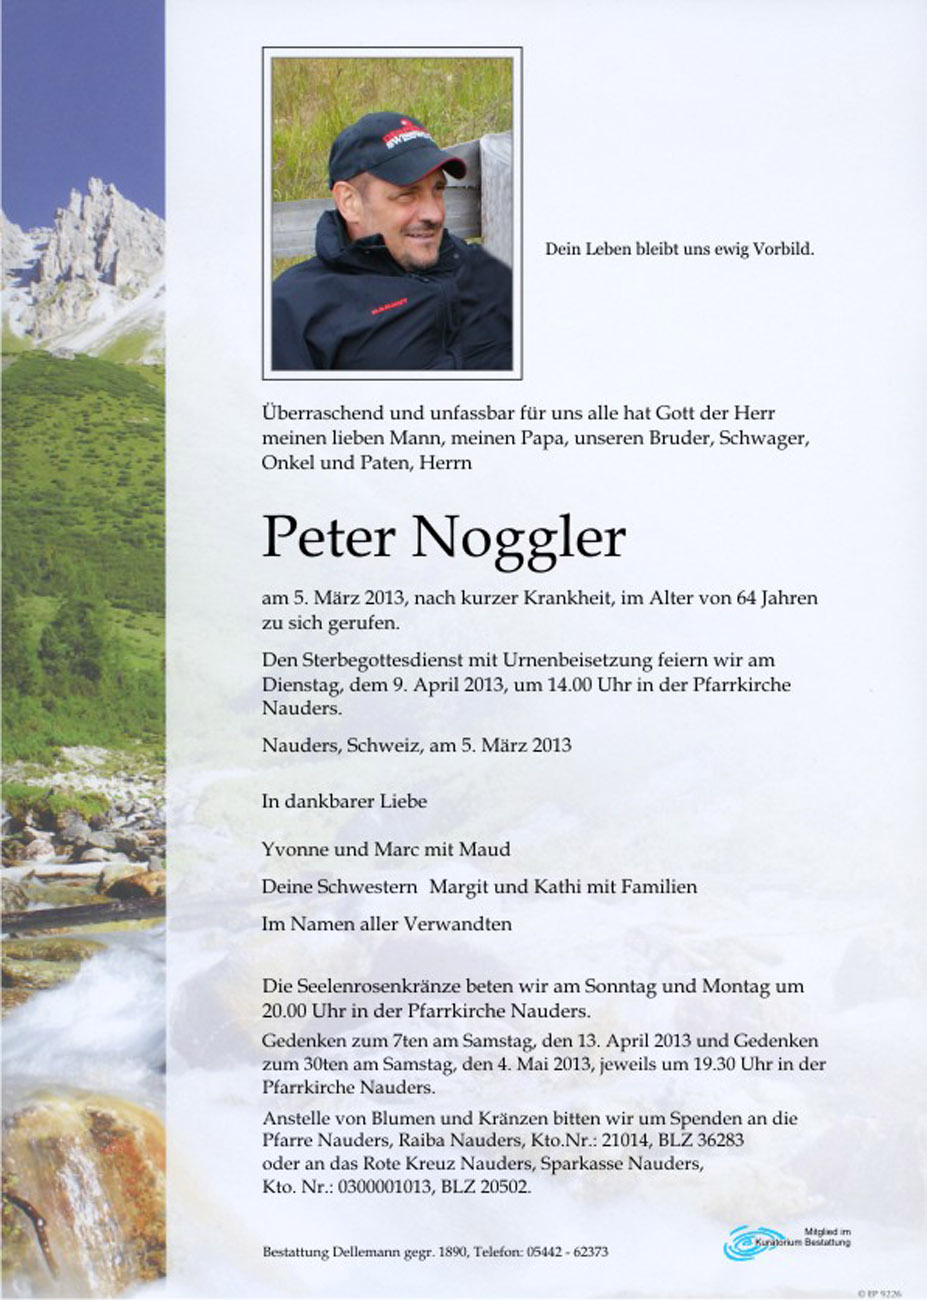   Peter Noggler